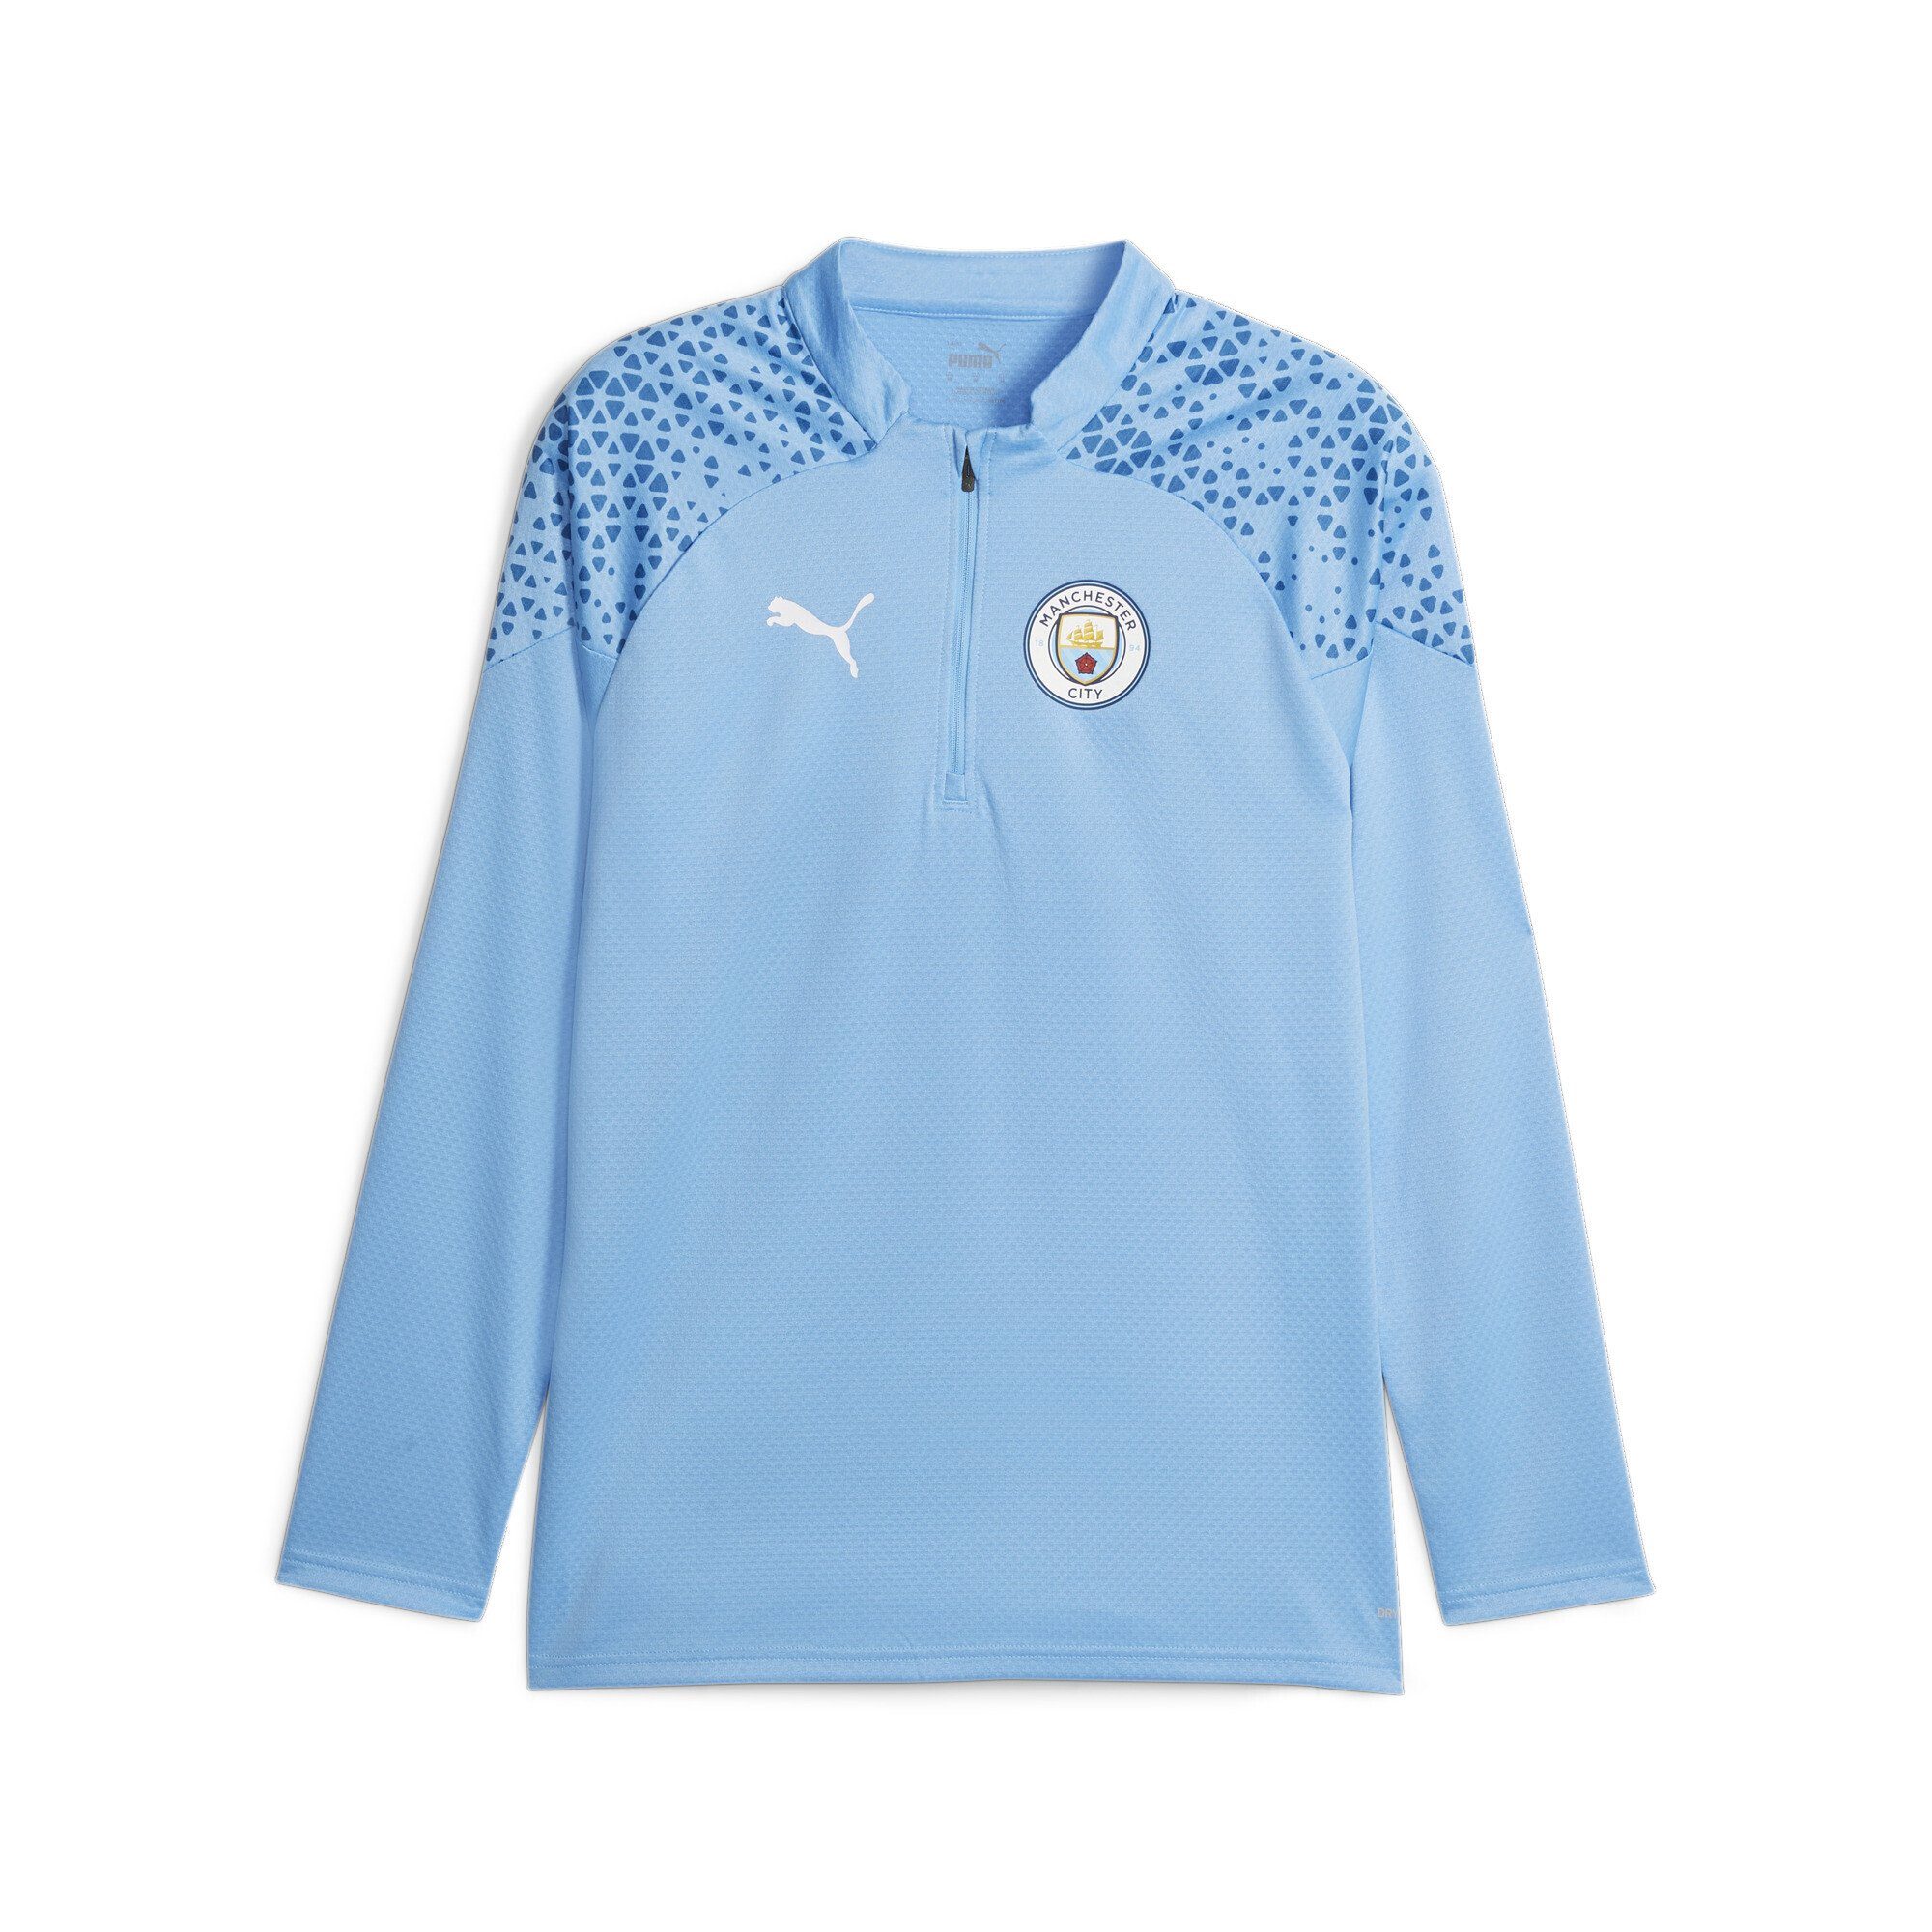 PUMA Trainingsshirt Manchester City Fußball-Trainings-Top Viertelreißverschluss Blue mit Team Light Lake